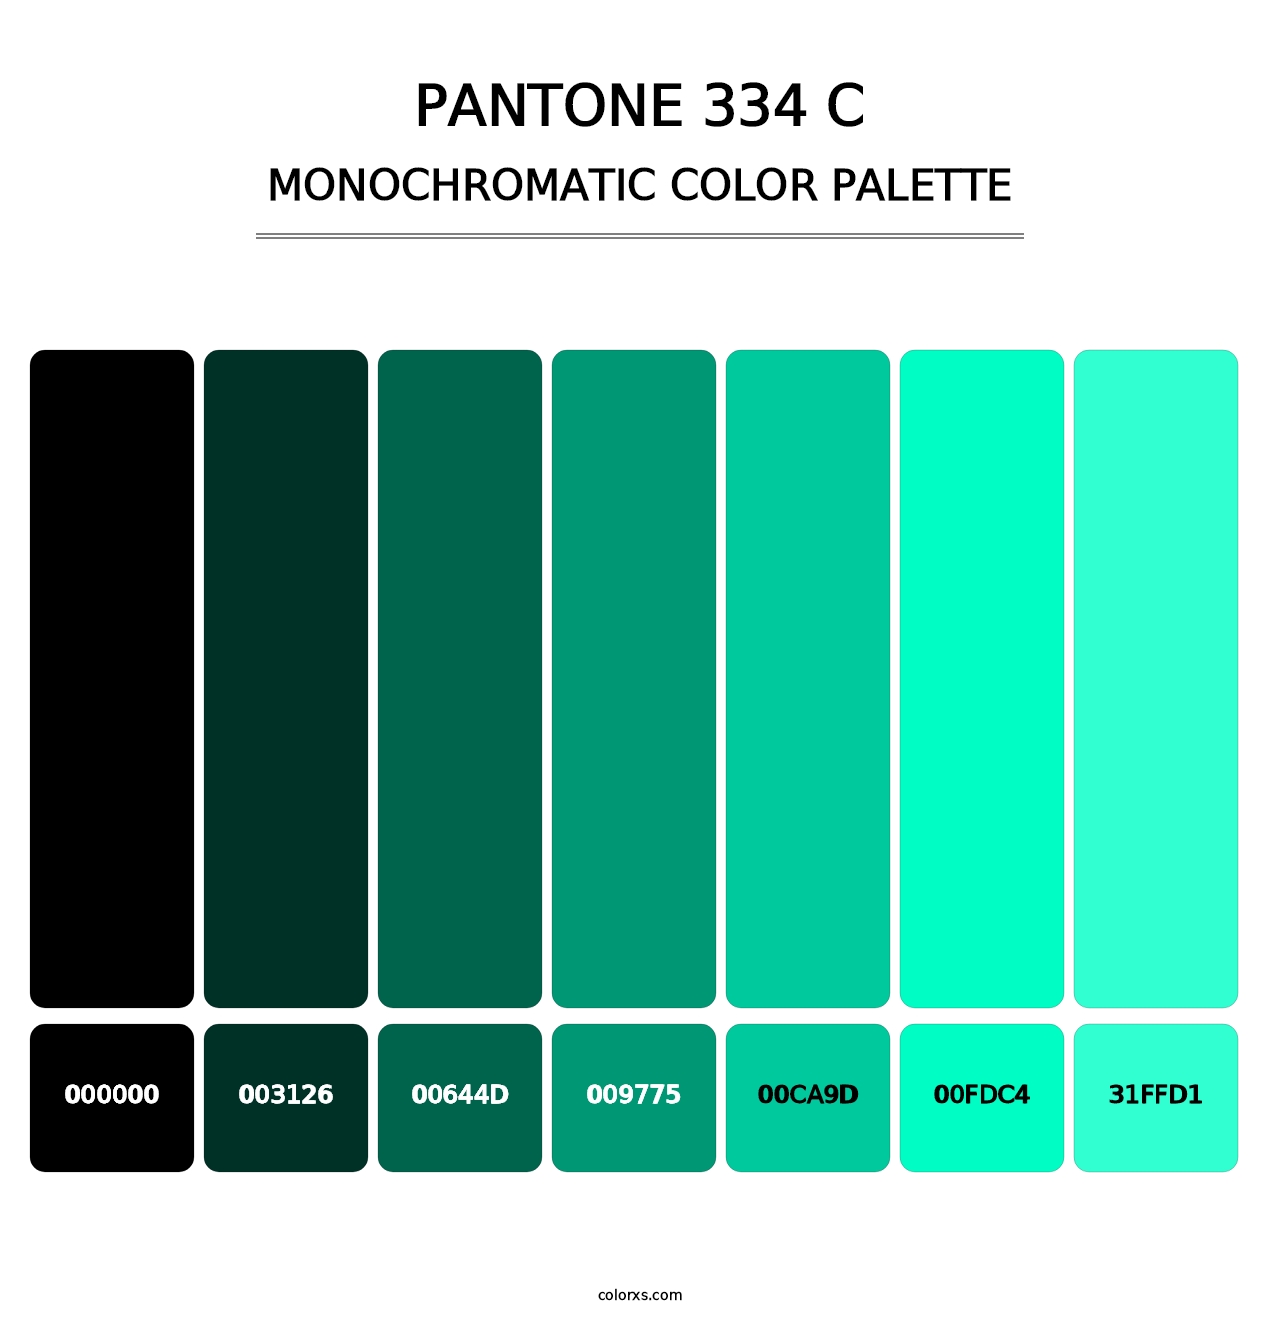 PANTONE 334 C - Monochromatic Color Palette